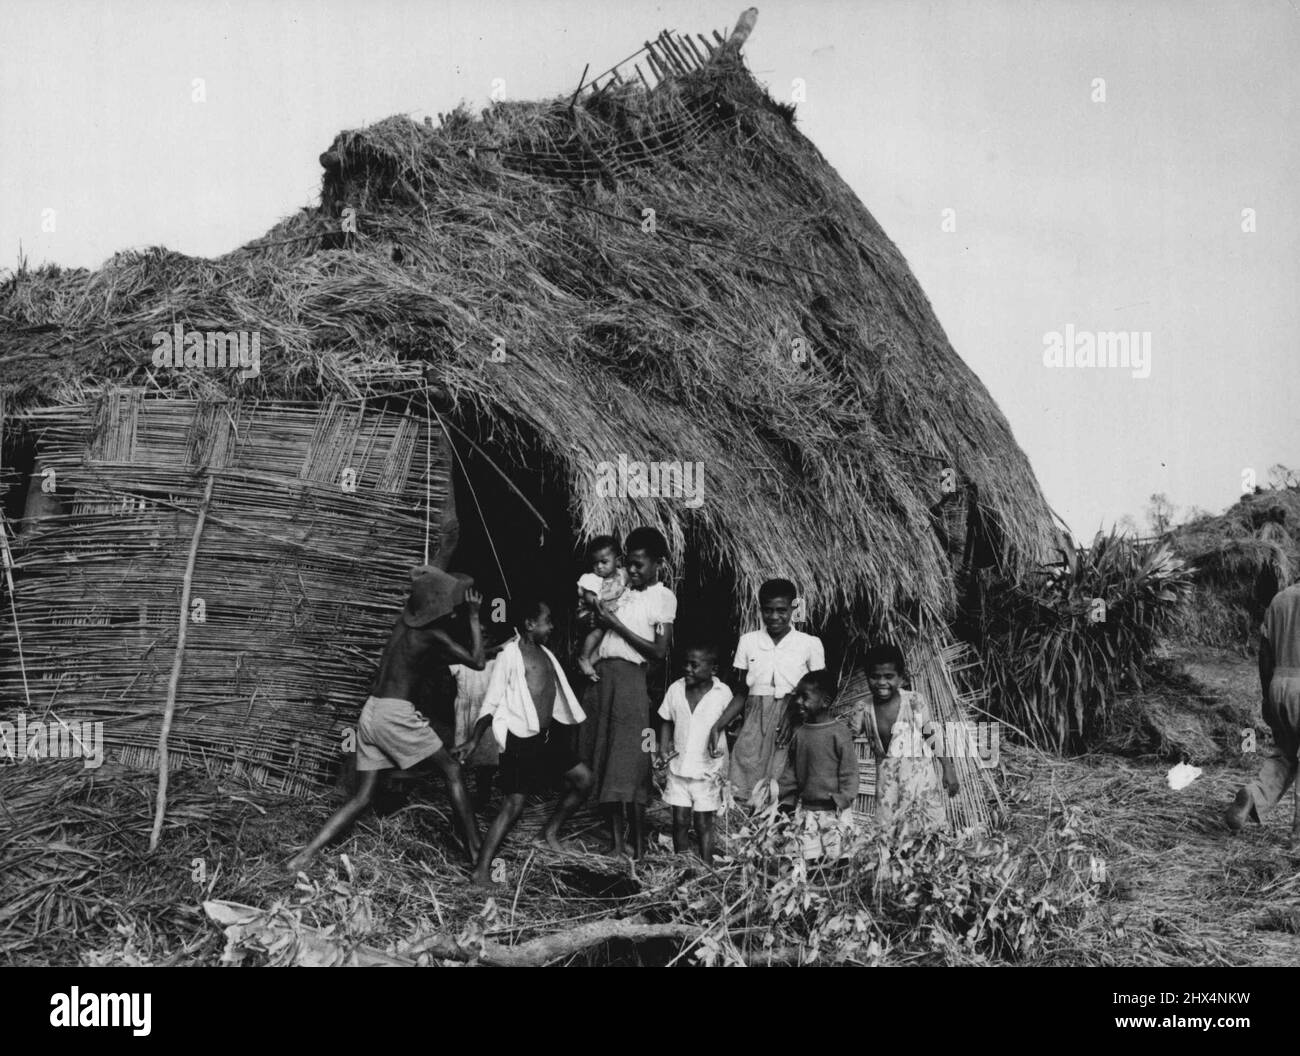 Figi Hurricane -- allegro di fronte alle avversità; una famiglia nativa, tipica di migliaia di persone che hanno sofferto dall'uragano, al di fuori della loro abitazione gravemente danneggiata sulla principale isola Fijiana di viti Levu. Febbraio 3, 1952. (Foto di New Zealand Herald Foto). Foto Stock